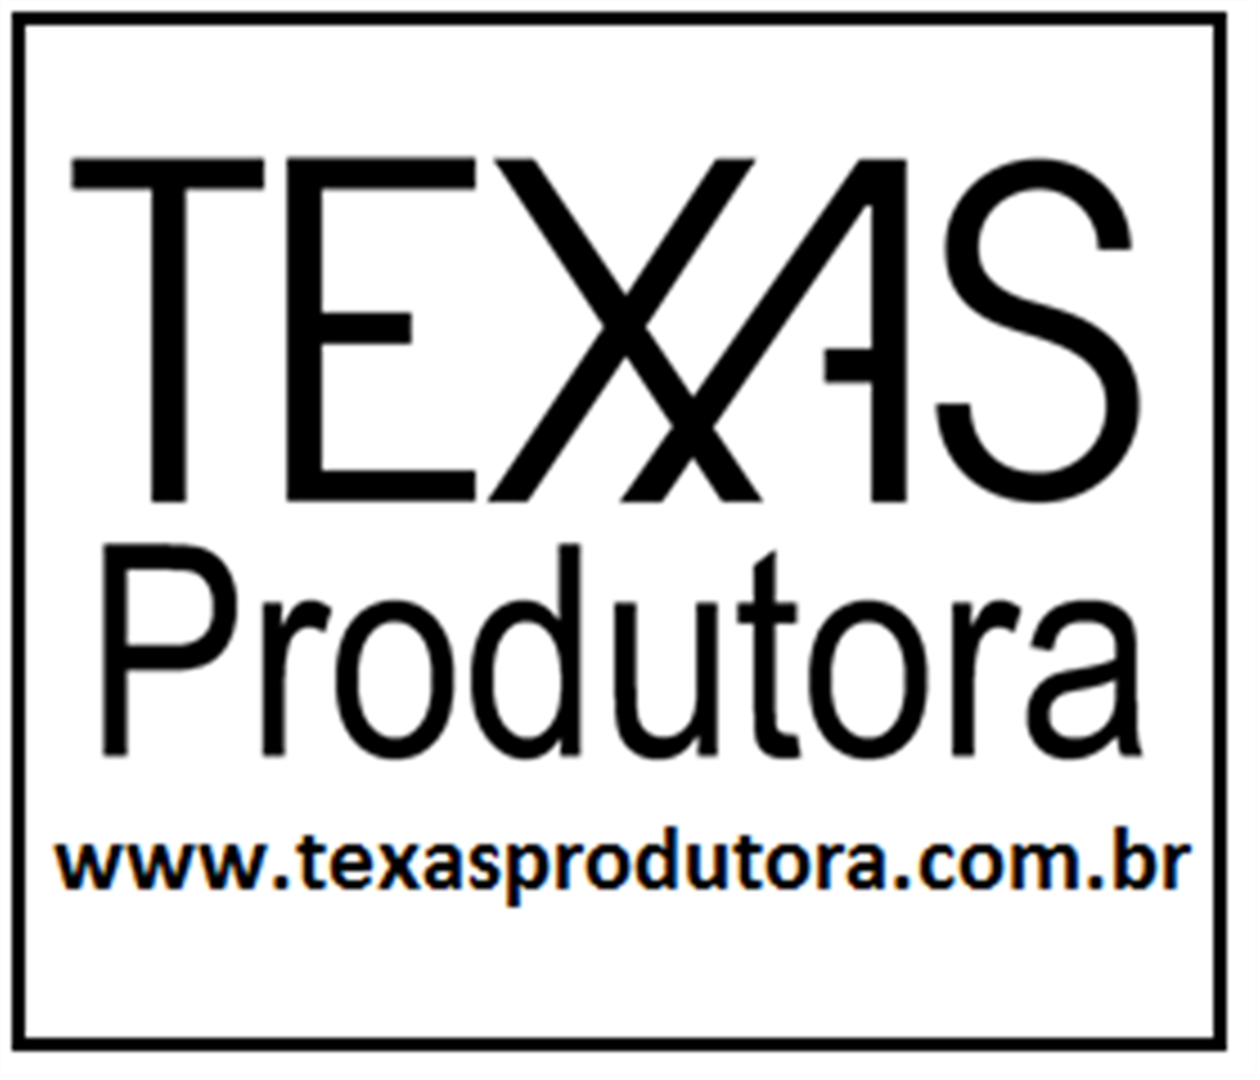 Texas produtora - Sonorização, iluminação e eventos